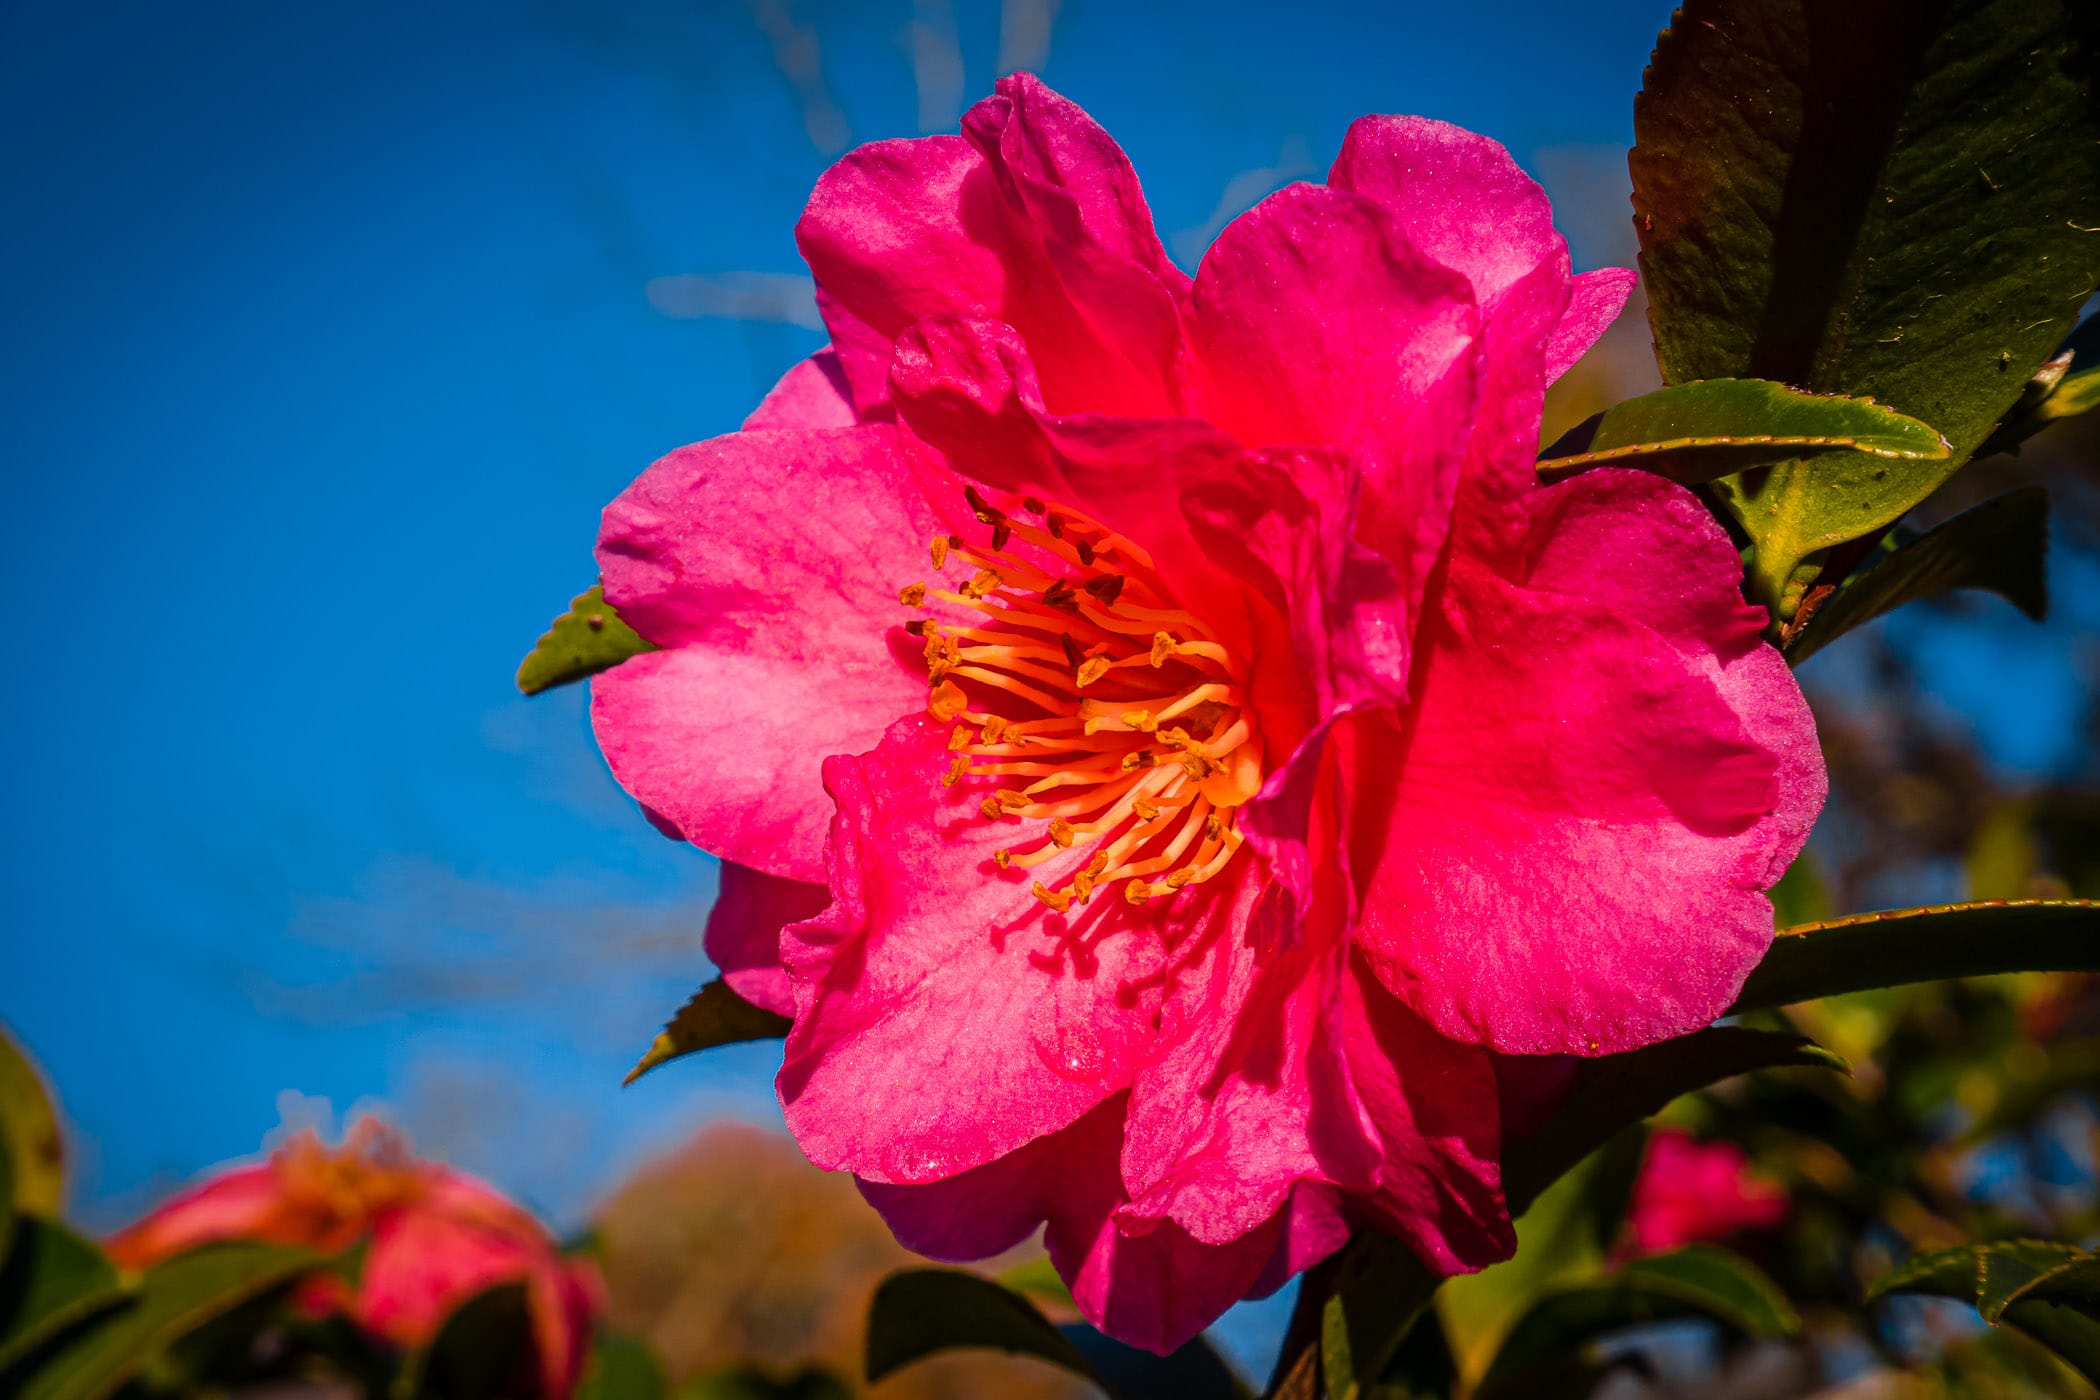 A pink flower grows in a Tyler, Texas, garden.